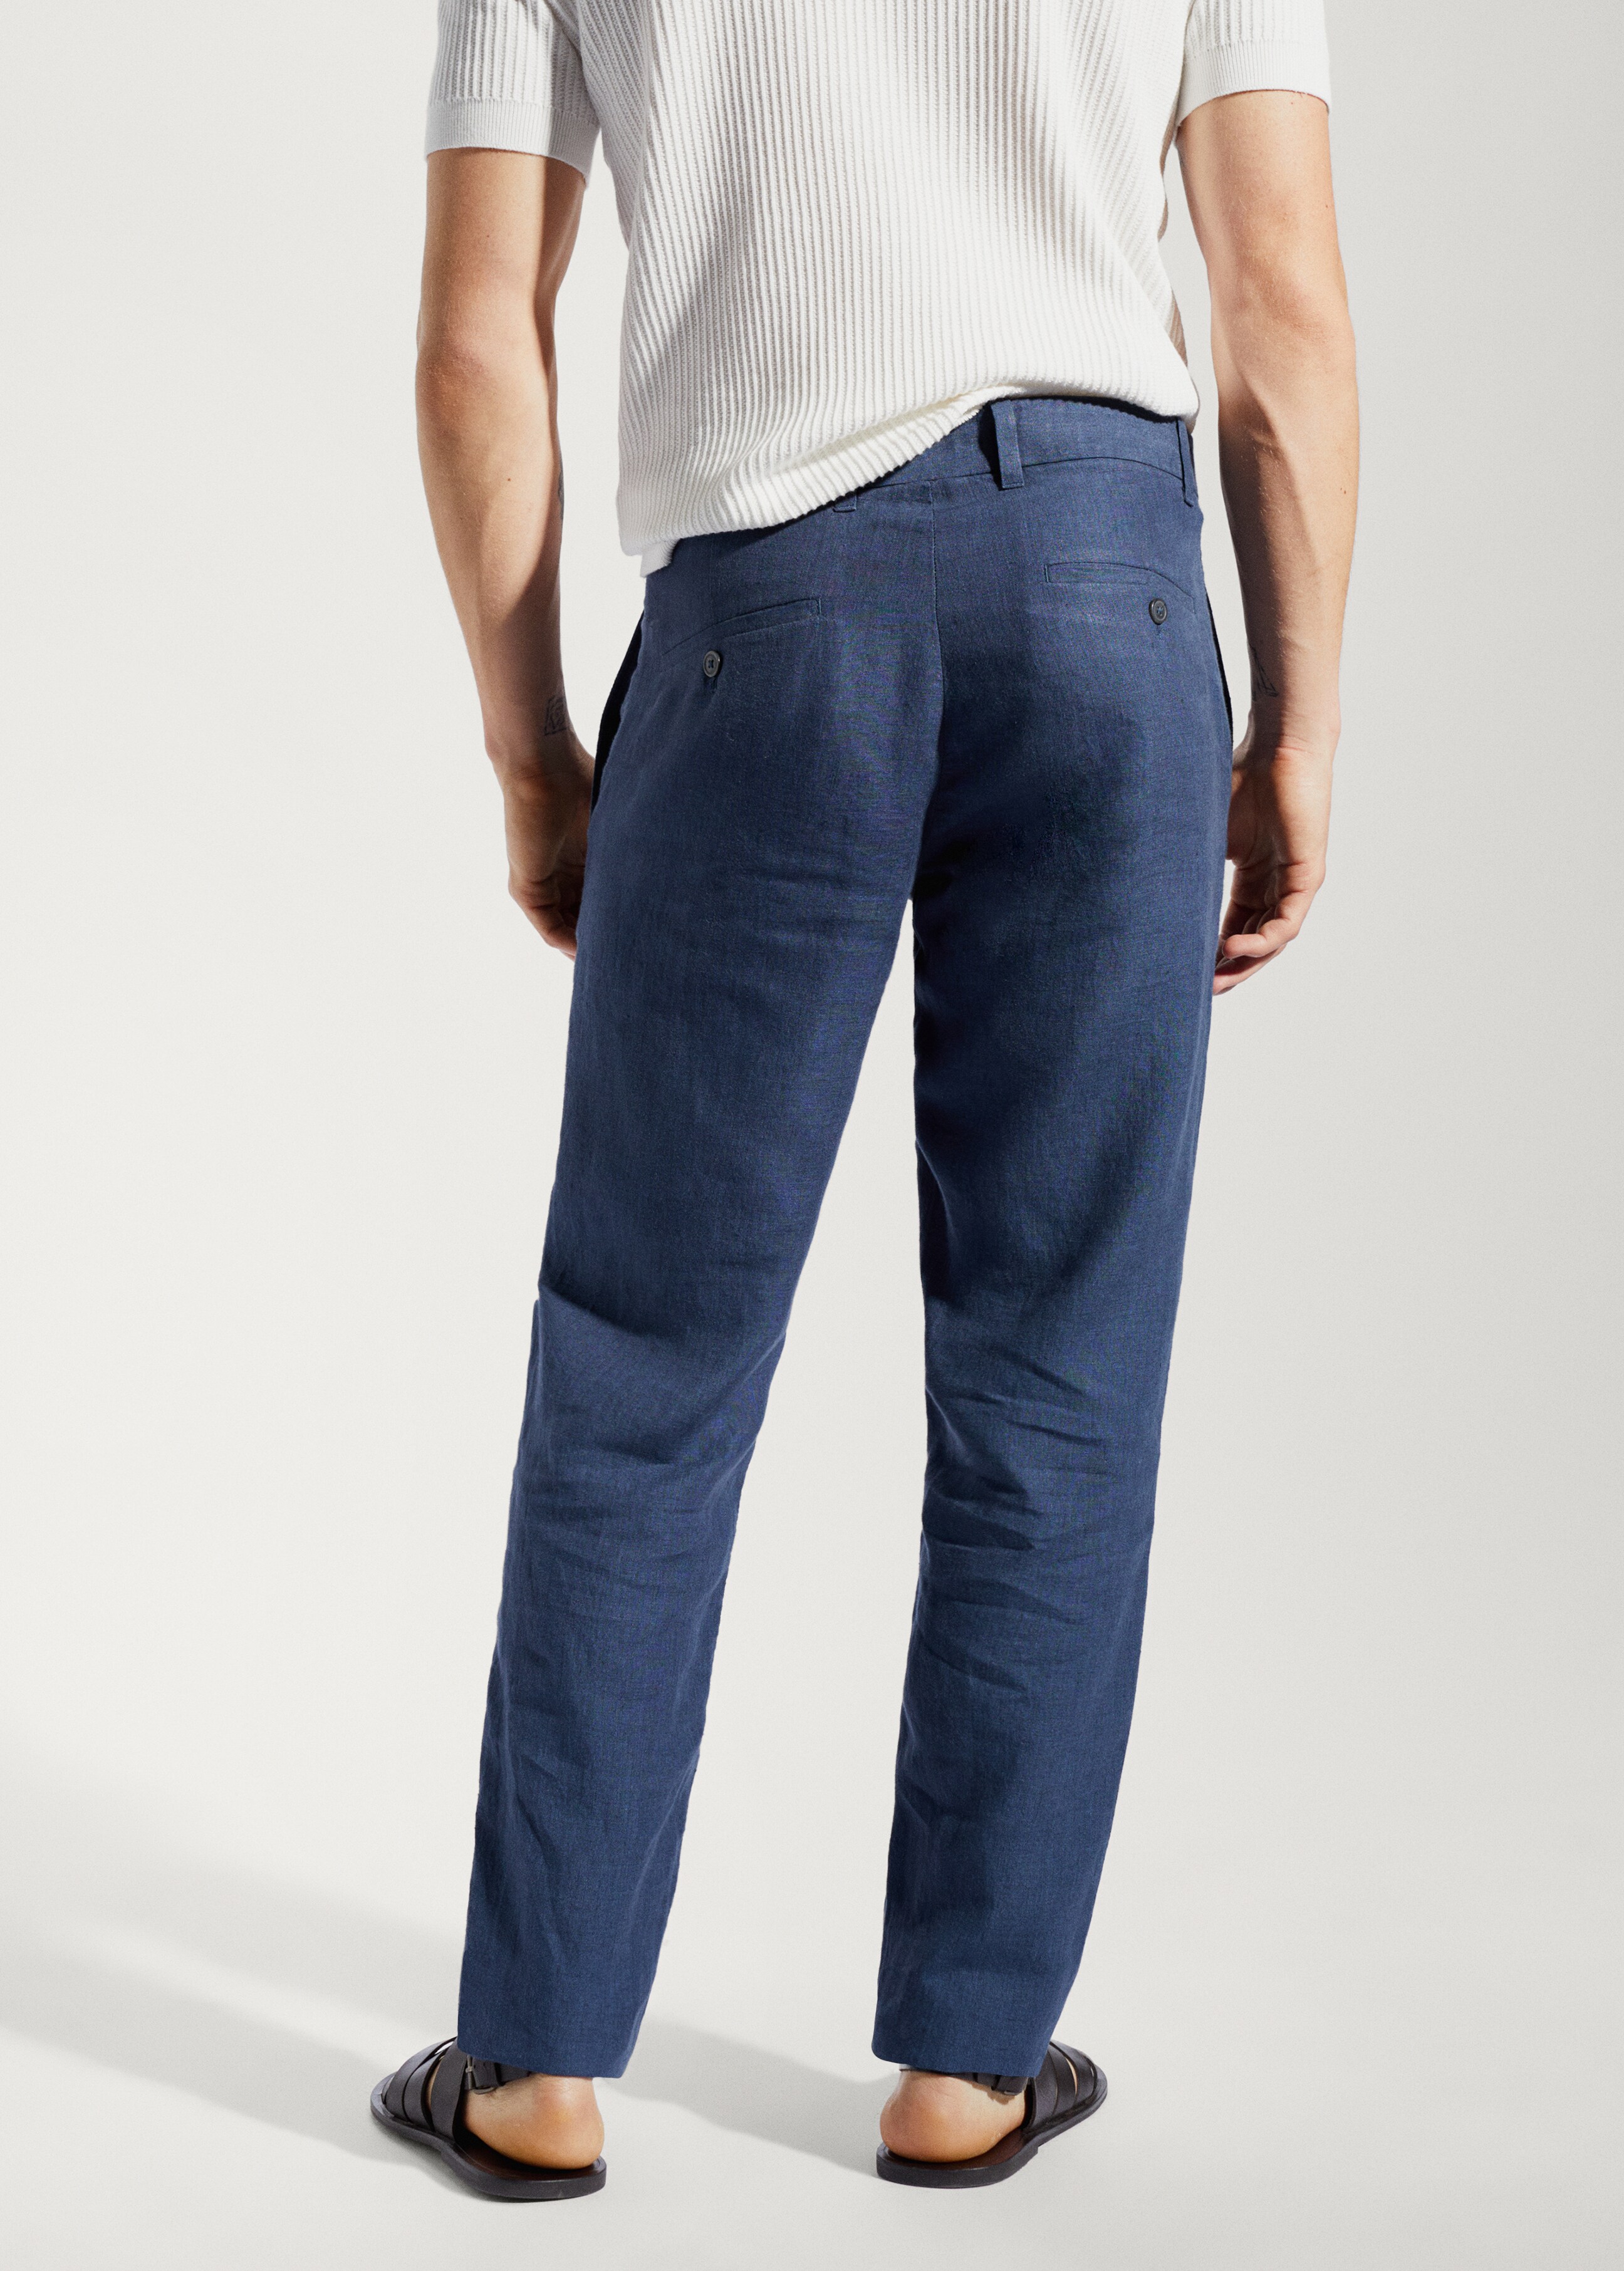 Pantalón 100% lino slim fit - Reverso del artículo